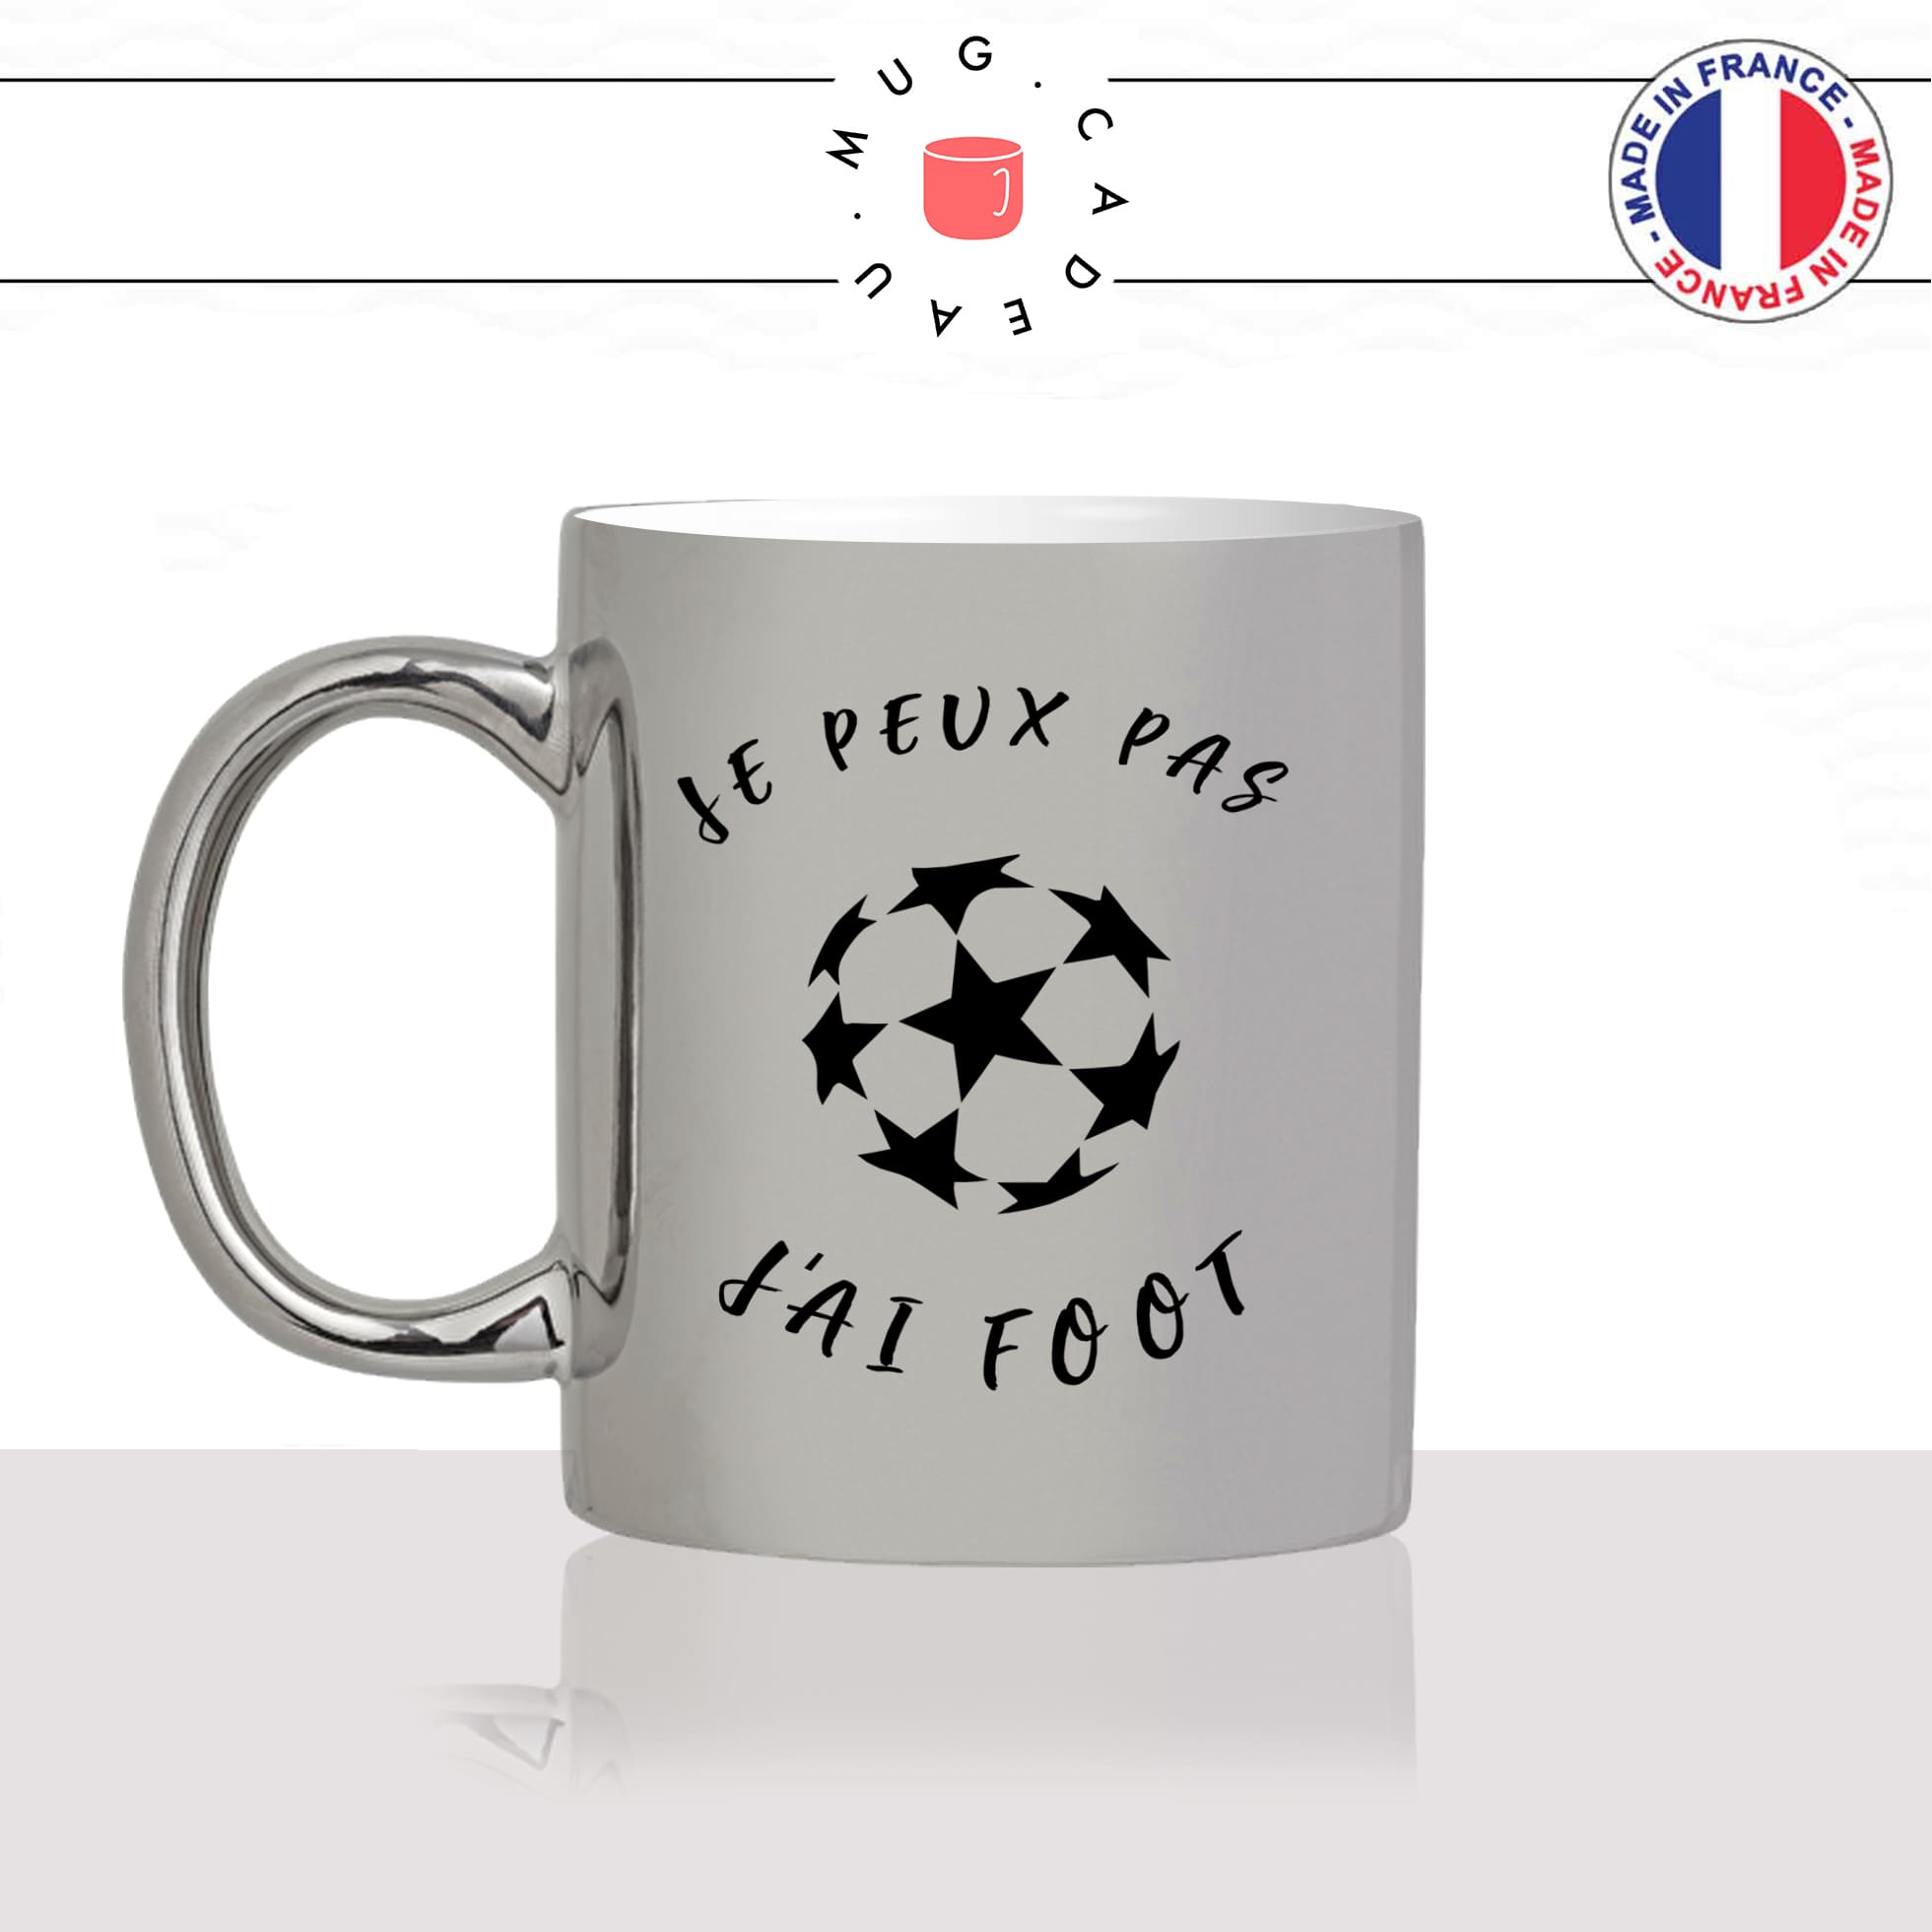 Mug Je peux pas j'ai foot - La French Touch